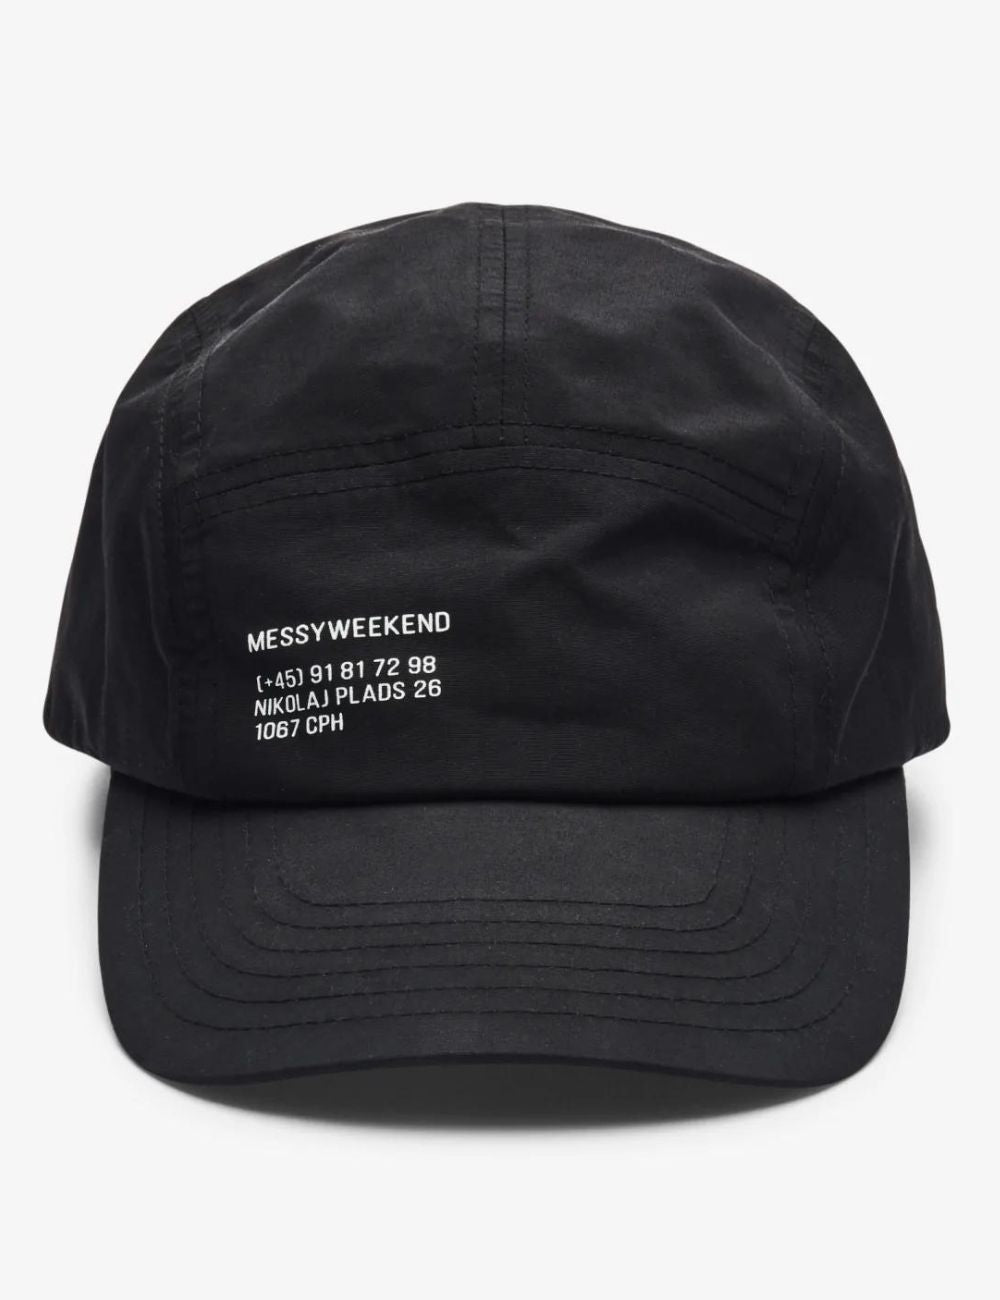 MessyWeekend CAP - Black